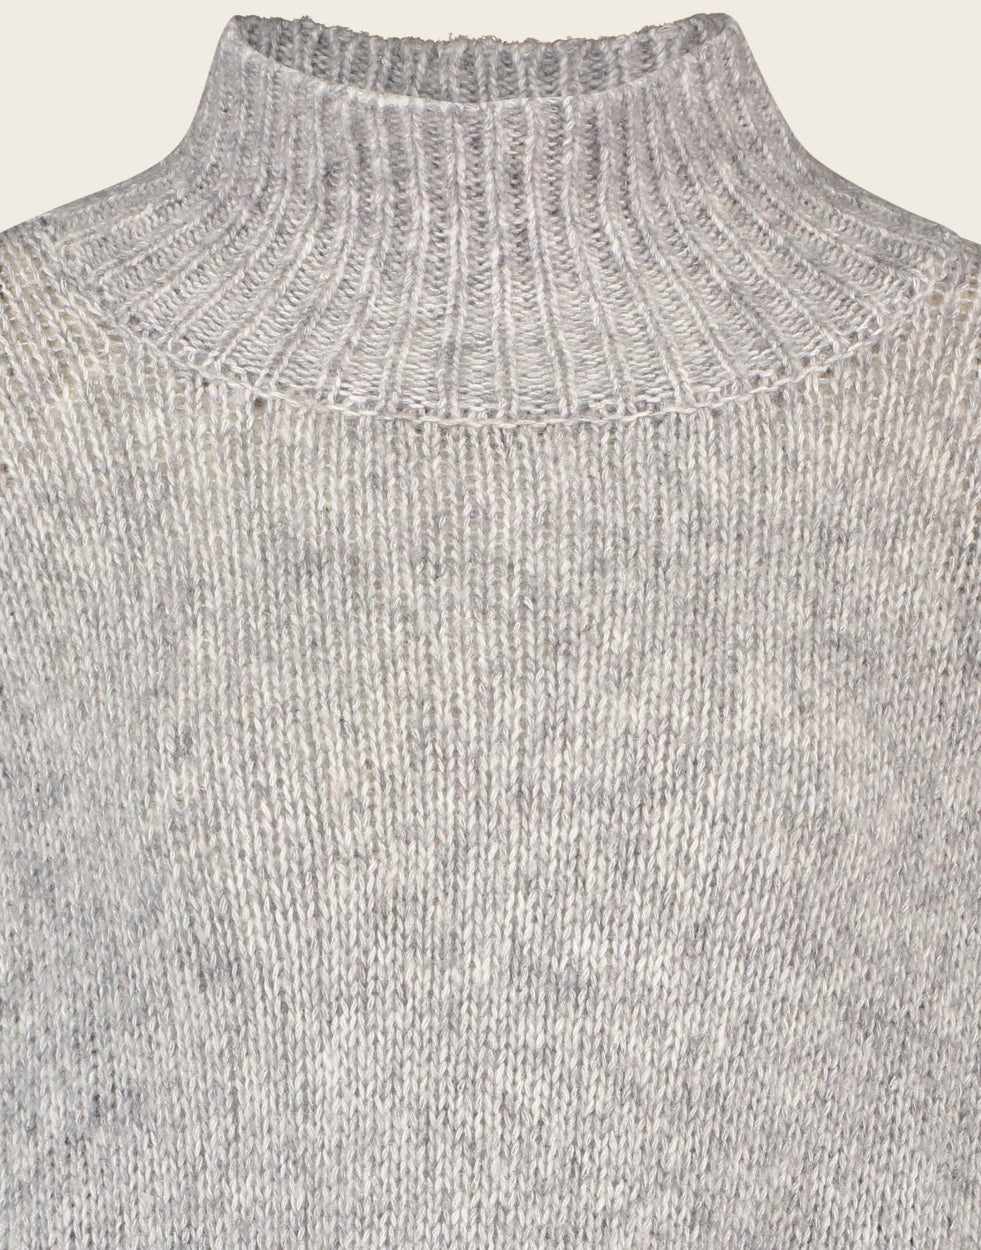 Pullover KN Marys | Light grey